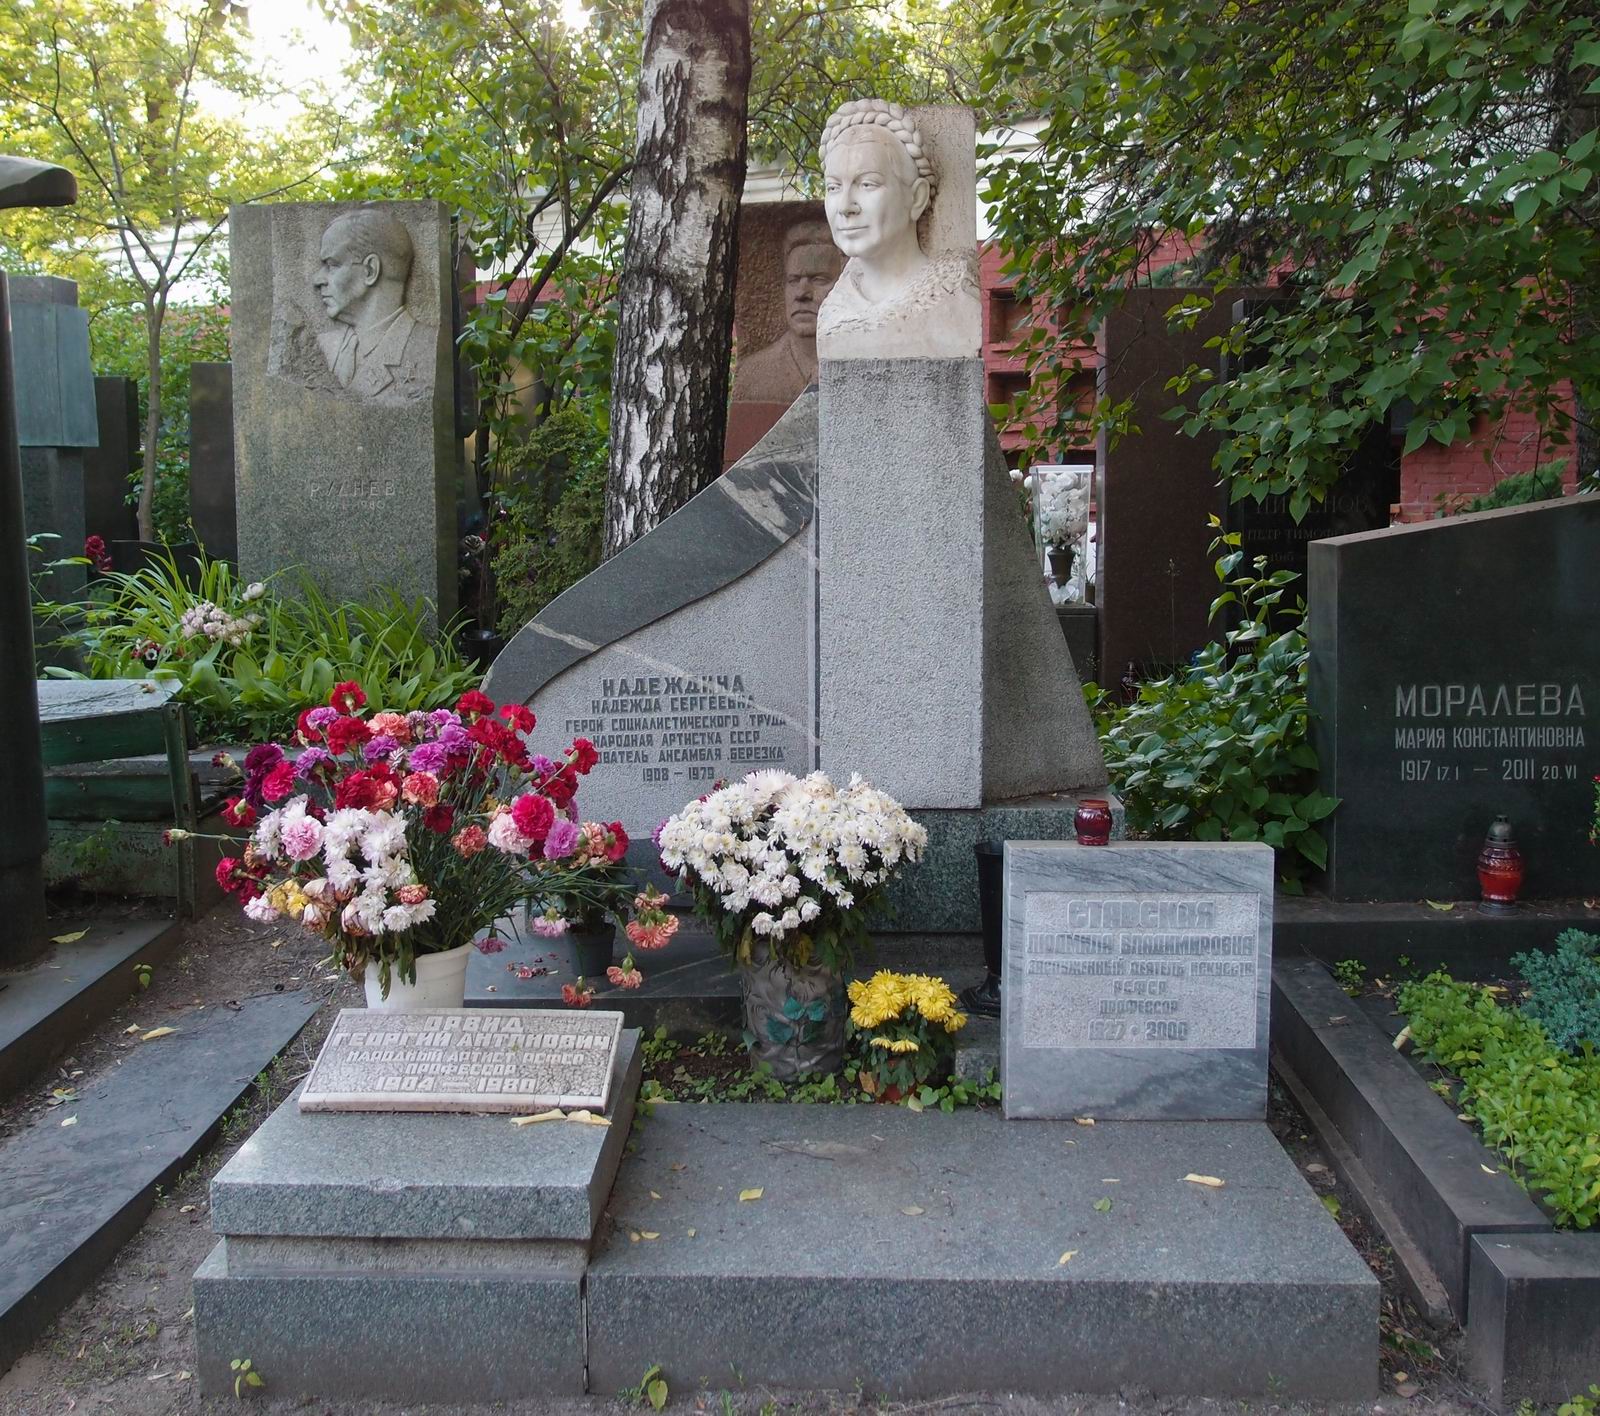 Памятник на могиле Надеждиной Н.С. (1908-1979), ск. П.Шапиро, арх. А.Гераскин, на Новодевичьем кладбище (9-5-7). Нажмите левую кнопку мыши чтобы увидеть фрагмент памятника.